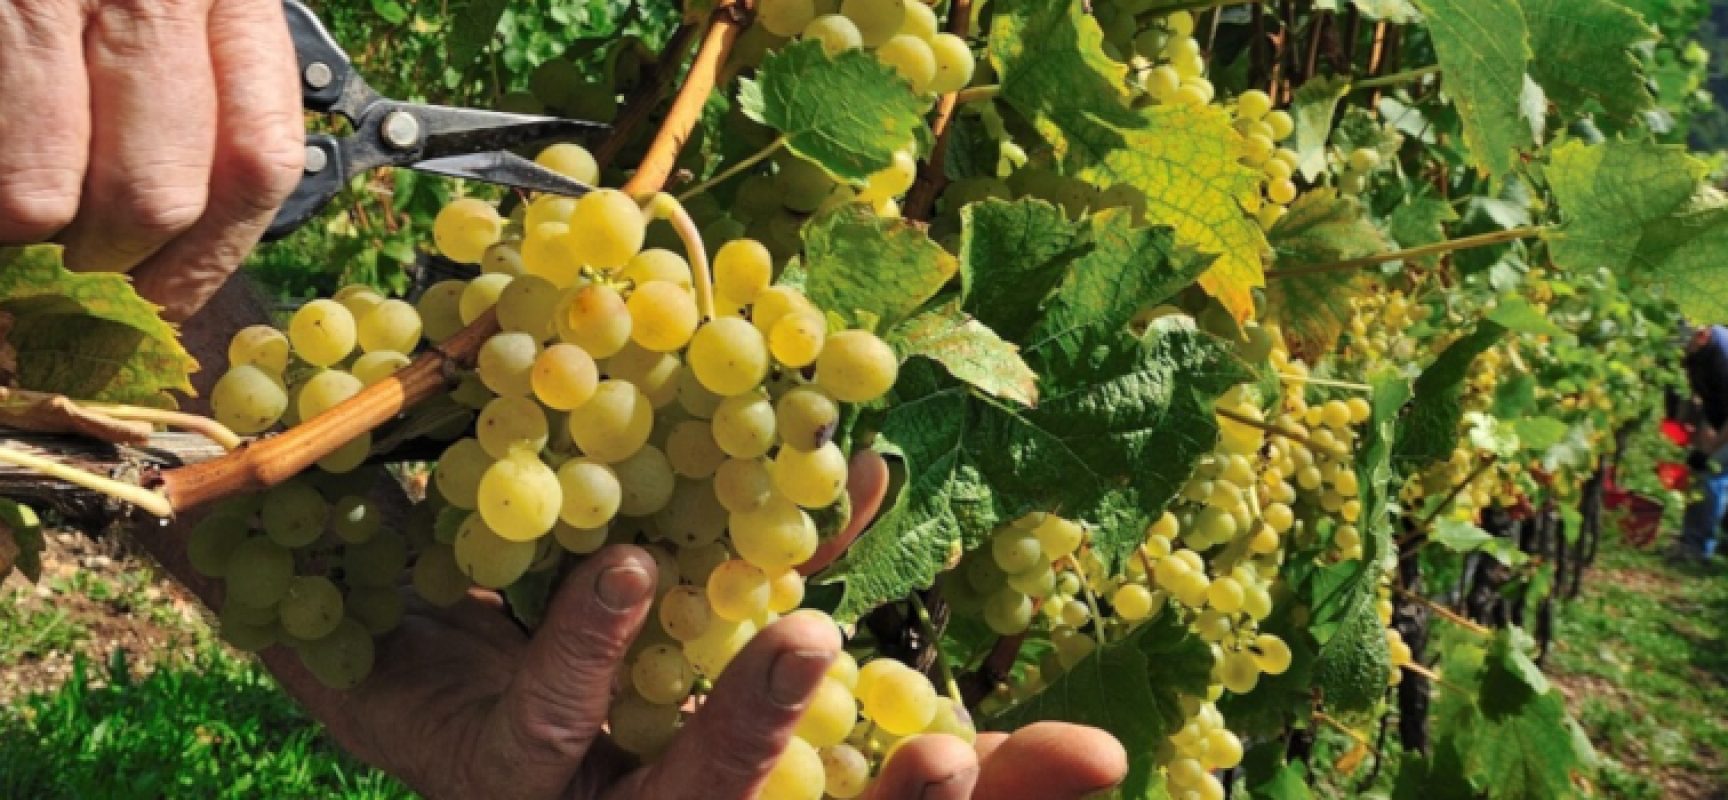 “Viticoltura: mercato, formazione e sostenibilità”﻿, incontro su mercato e vino pugliese